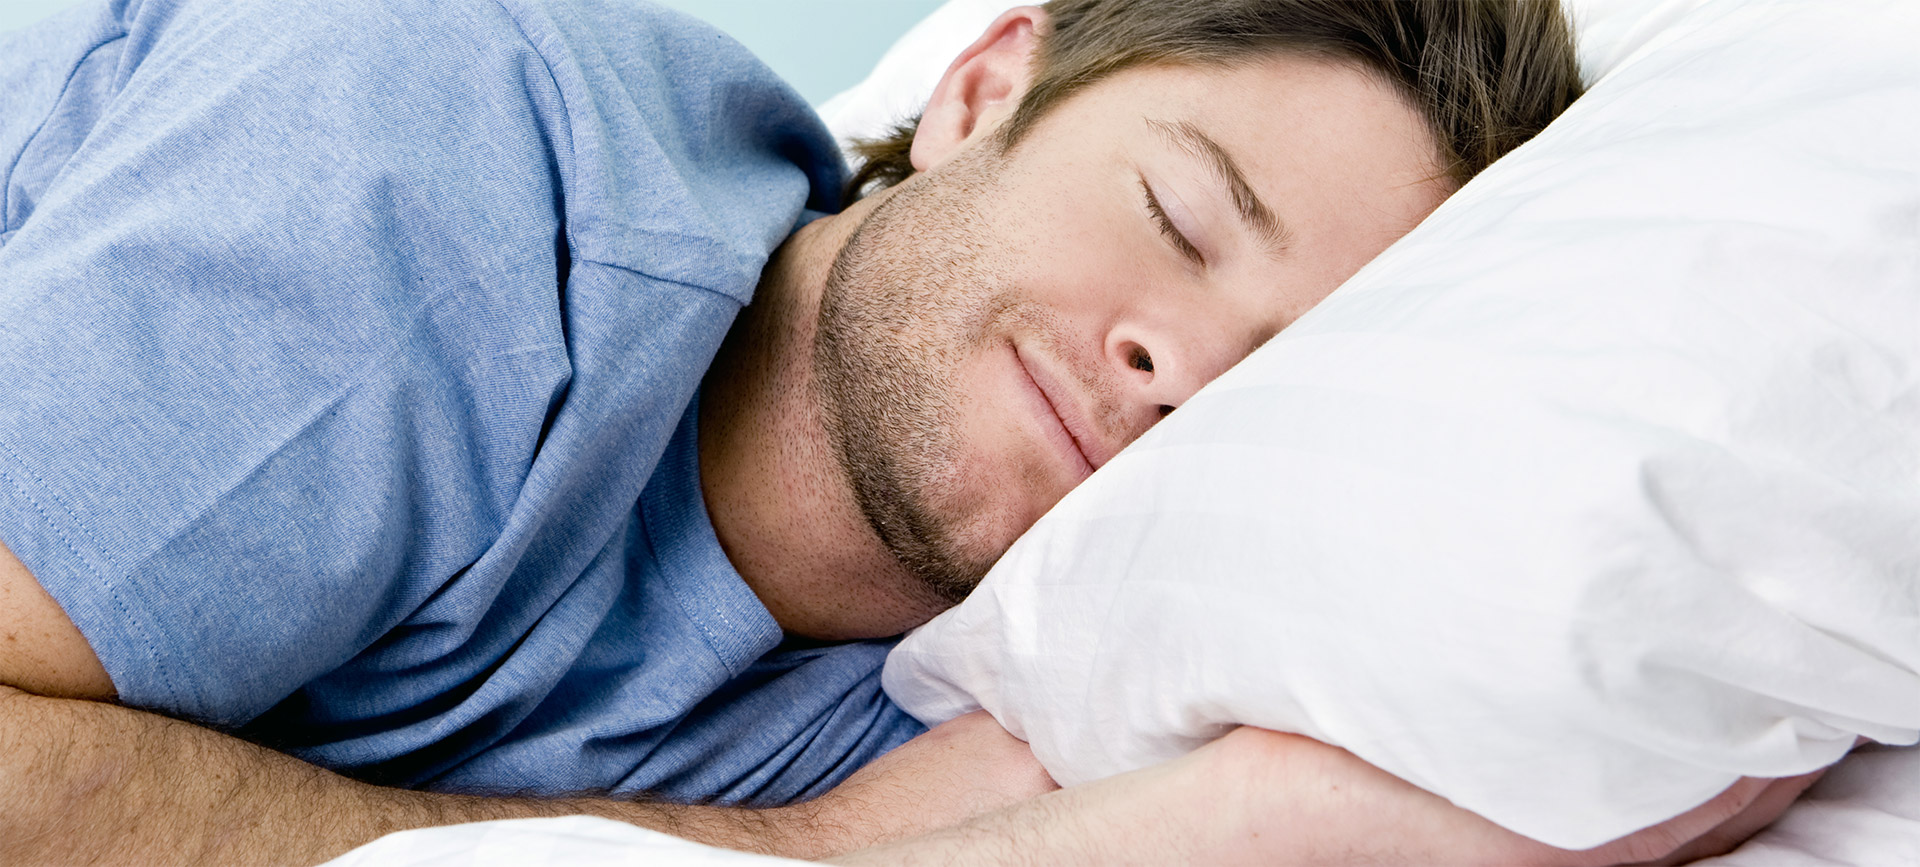 Consejos para el sueño saludable - Salud Integral